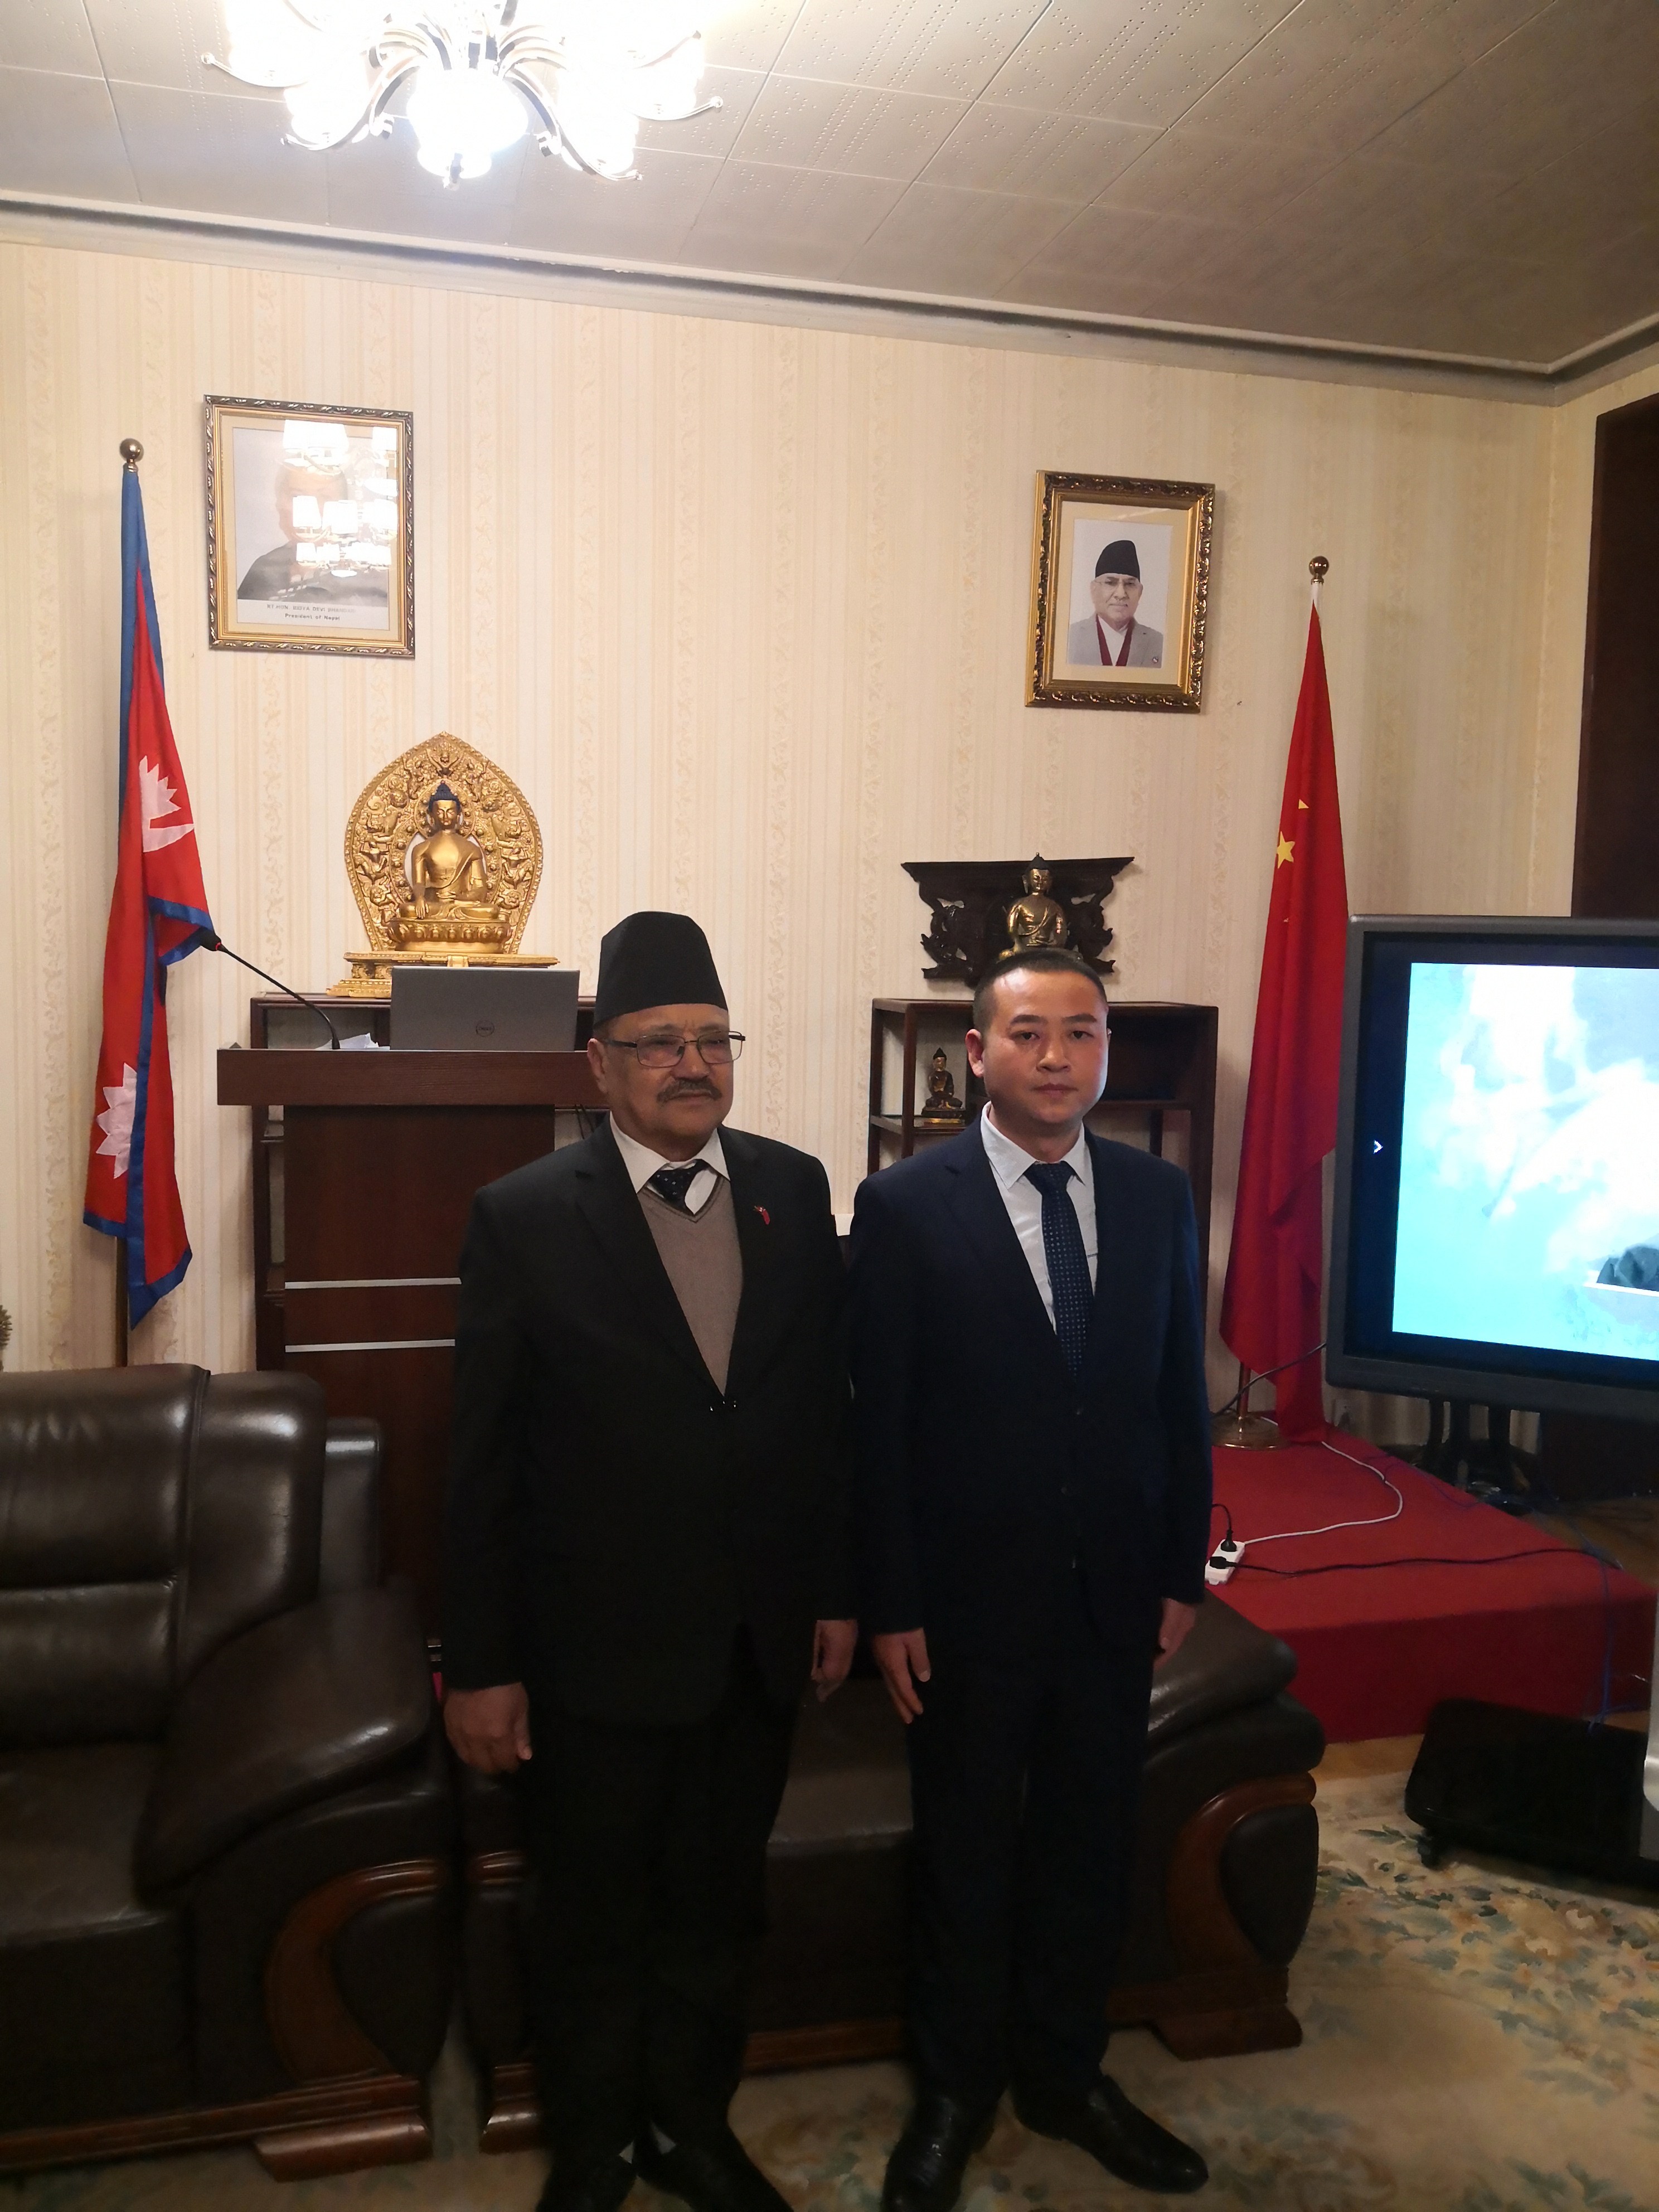 【全广网】贵州文祥和平国际贸易集团董事长拜访尼泊尔驻华大使